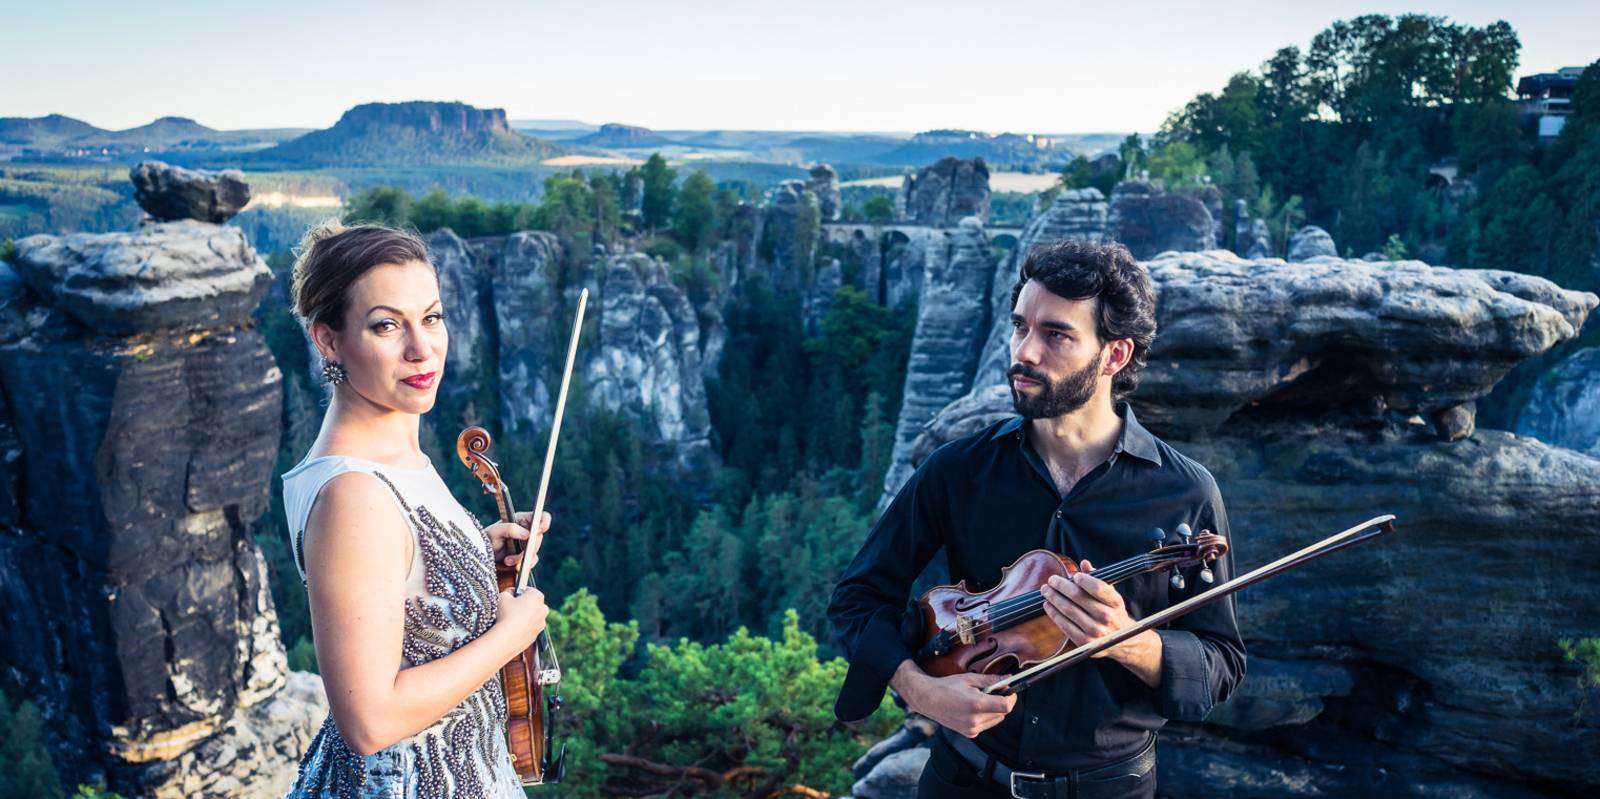 Eine Musikerin und ein Musiker halten jeweils eine Violine und einen Bogen in der Hand, hinter ihnen ist eine Landschaft mit grünen Bäumen, Felsen und einem Abgrund.